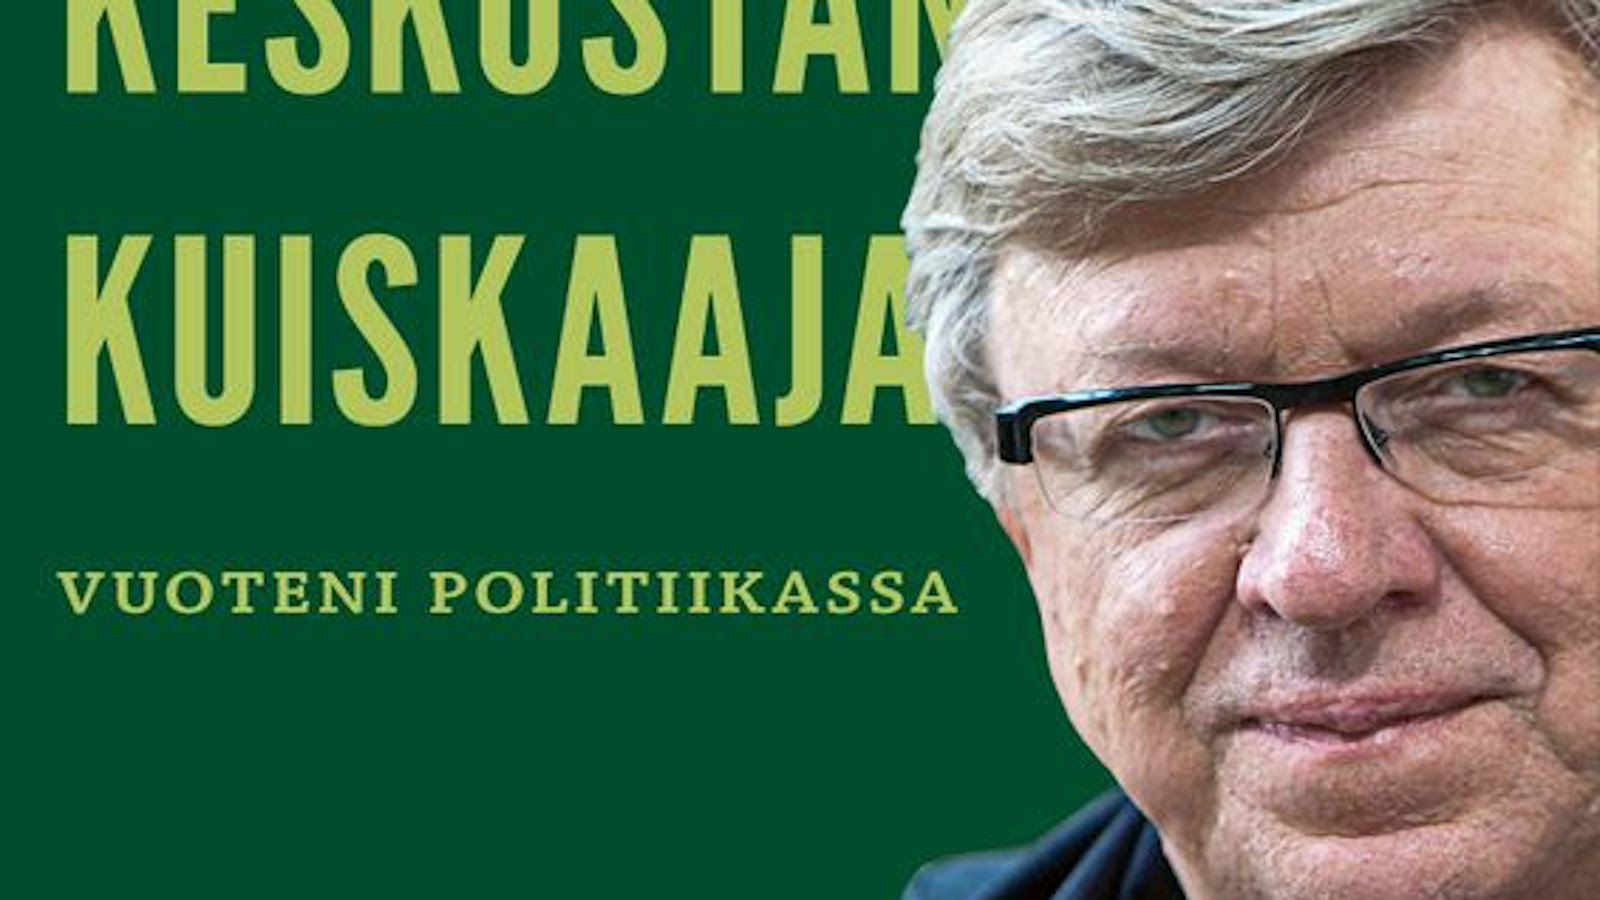 Kirjapaja on julkaissut syksyllä 2021 Timo Laanisen muistelmat Timo Laaninen, Keskustan kuiskaaja - Vuoteni politiikassa.